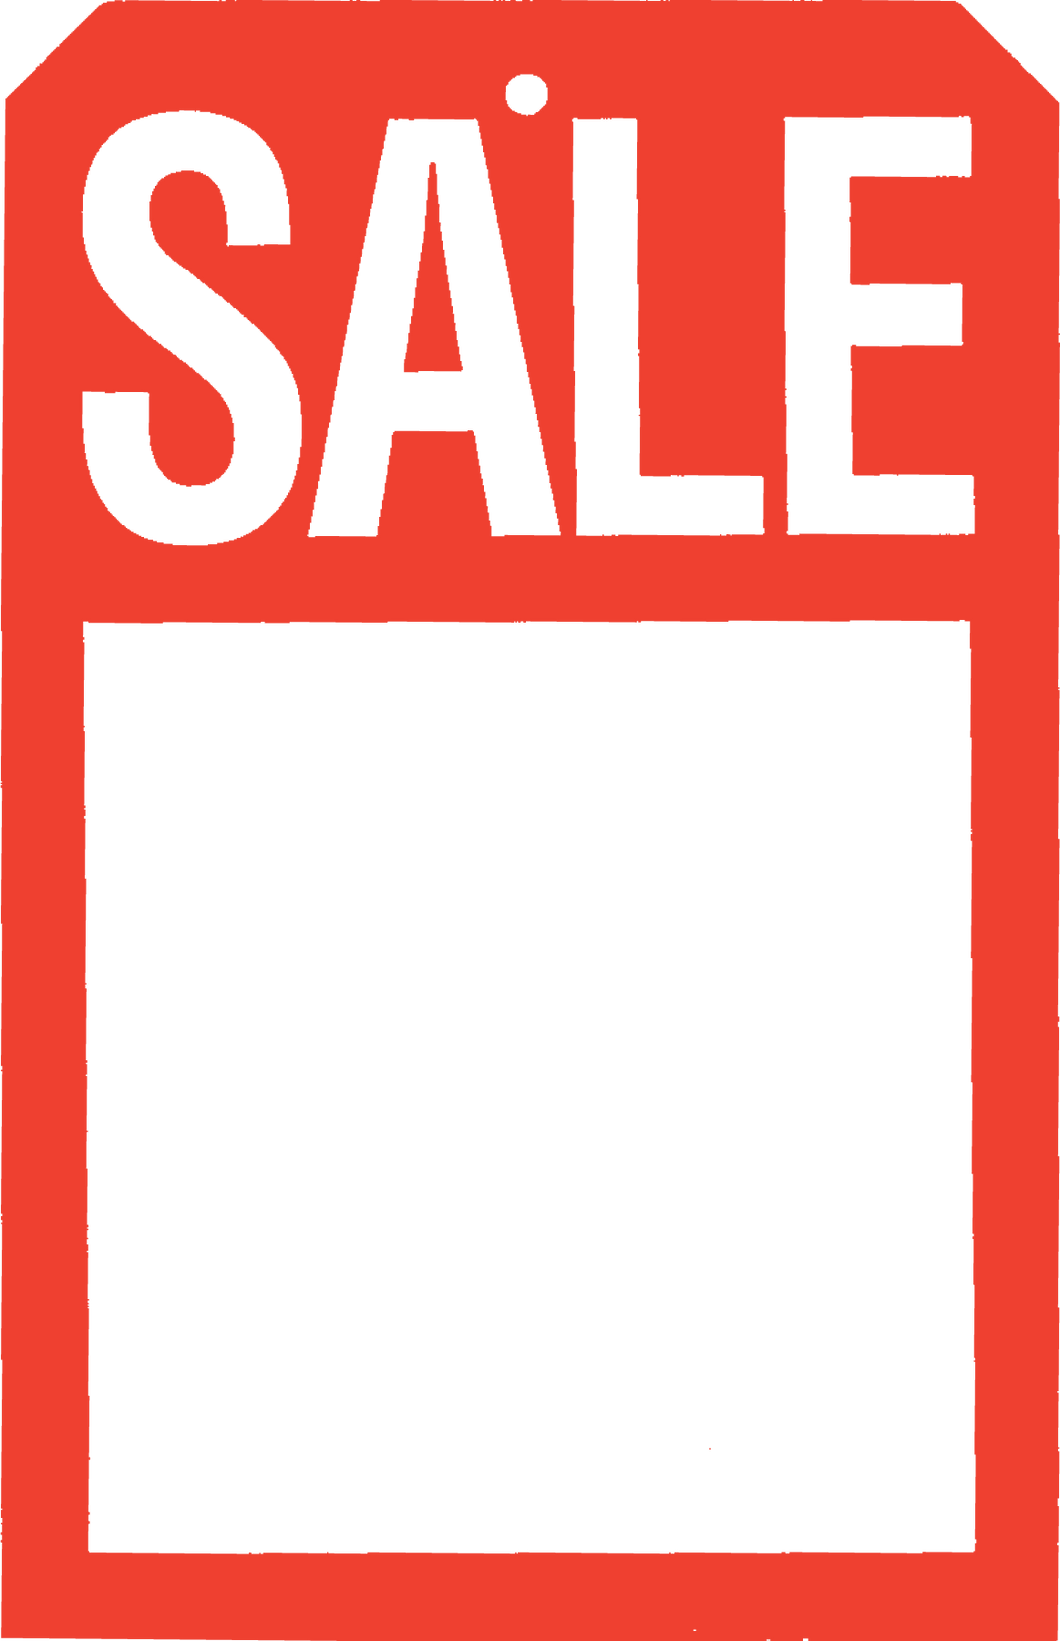 660 Sale